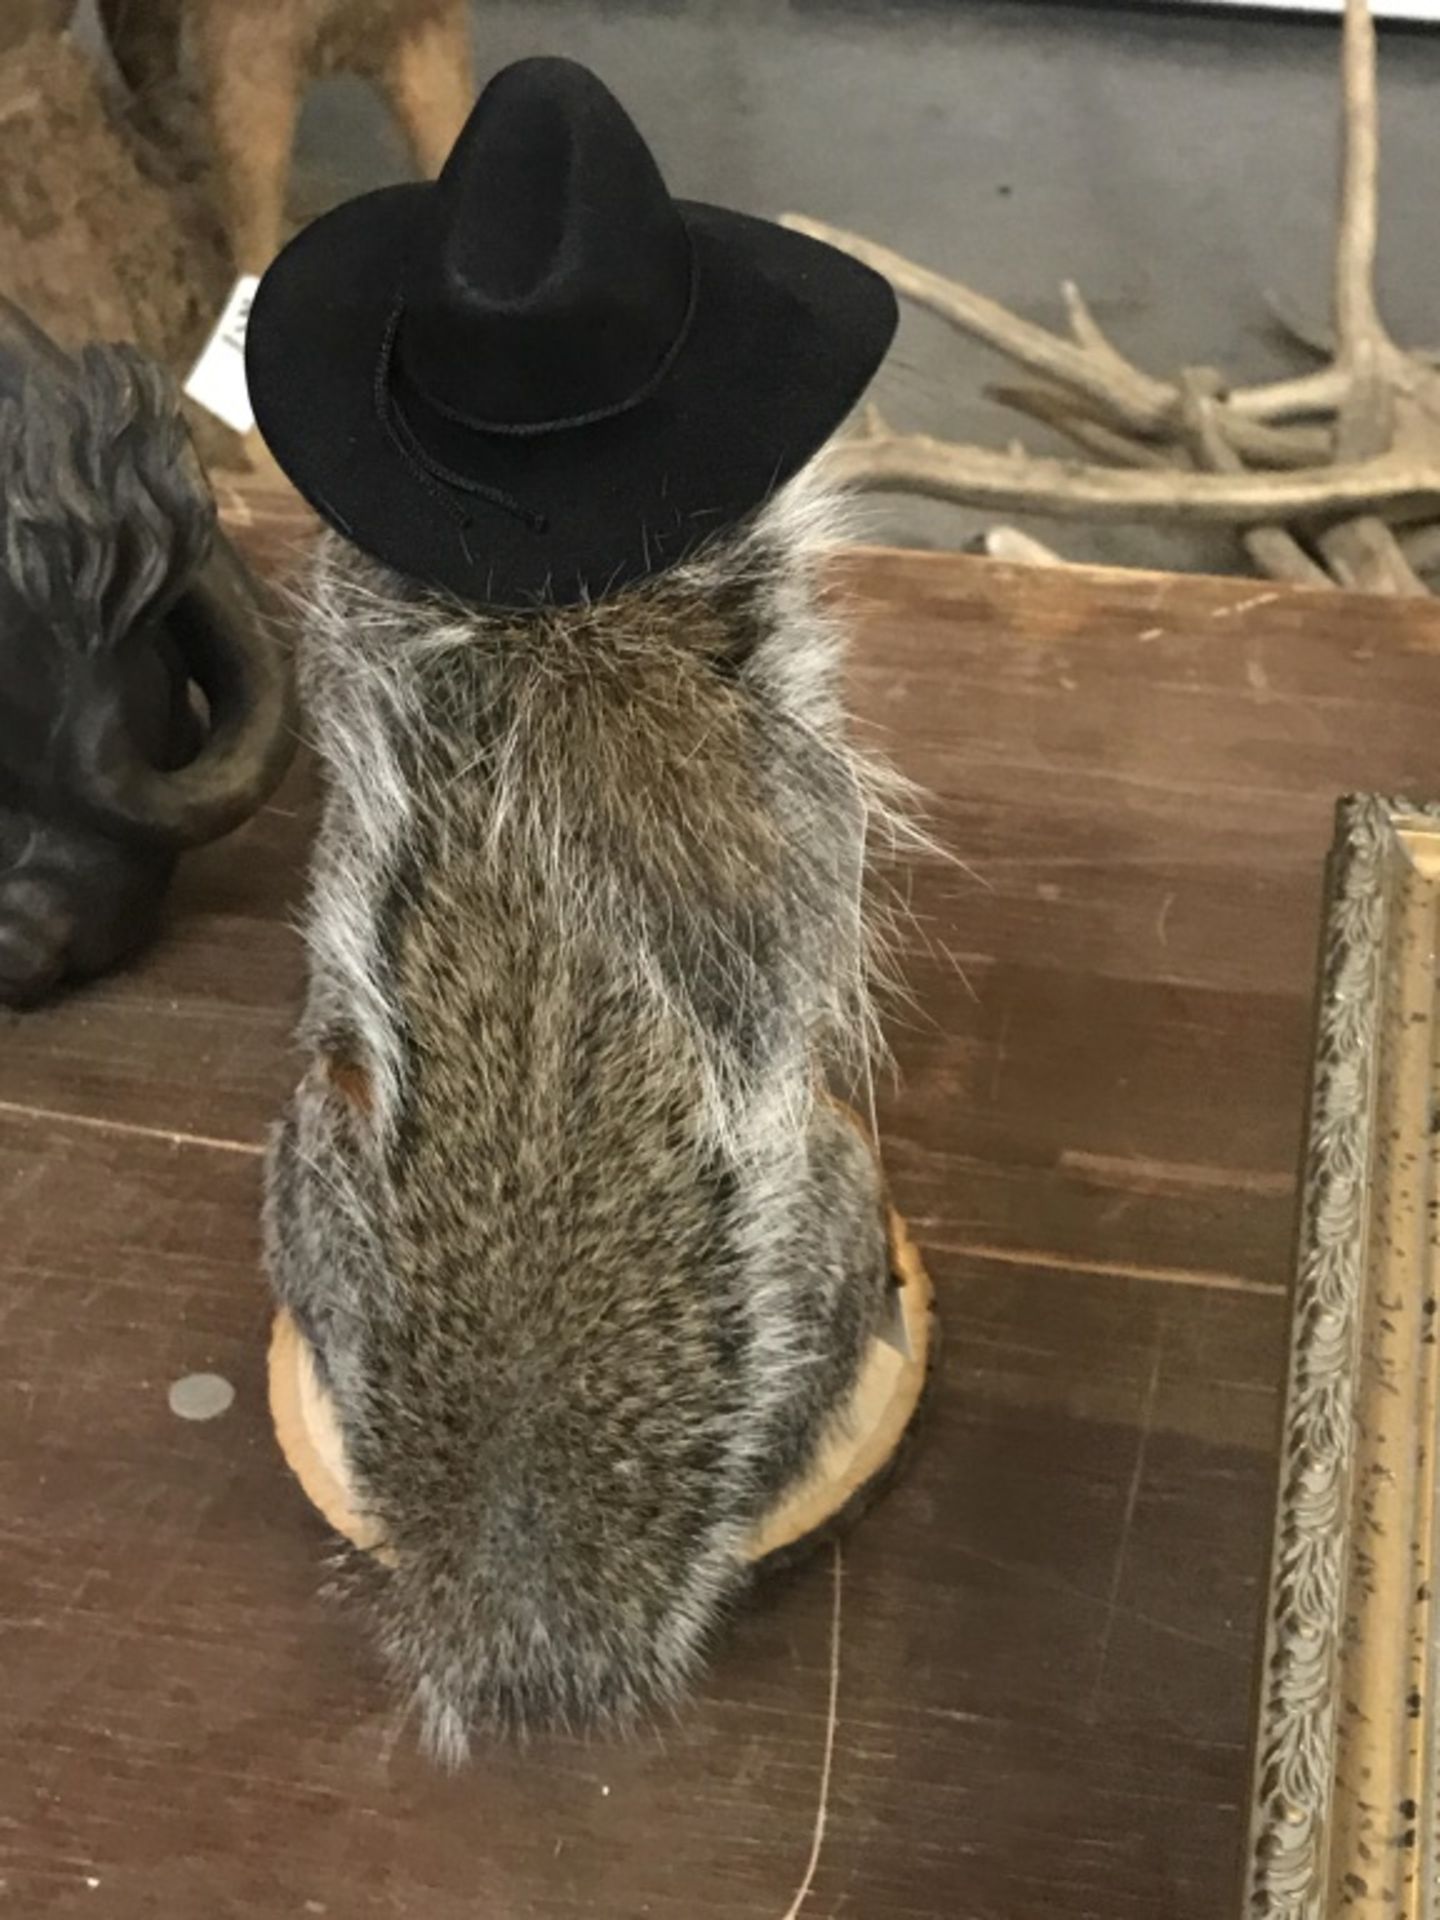 Cowboy Squirrel - Image 16 of 17